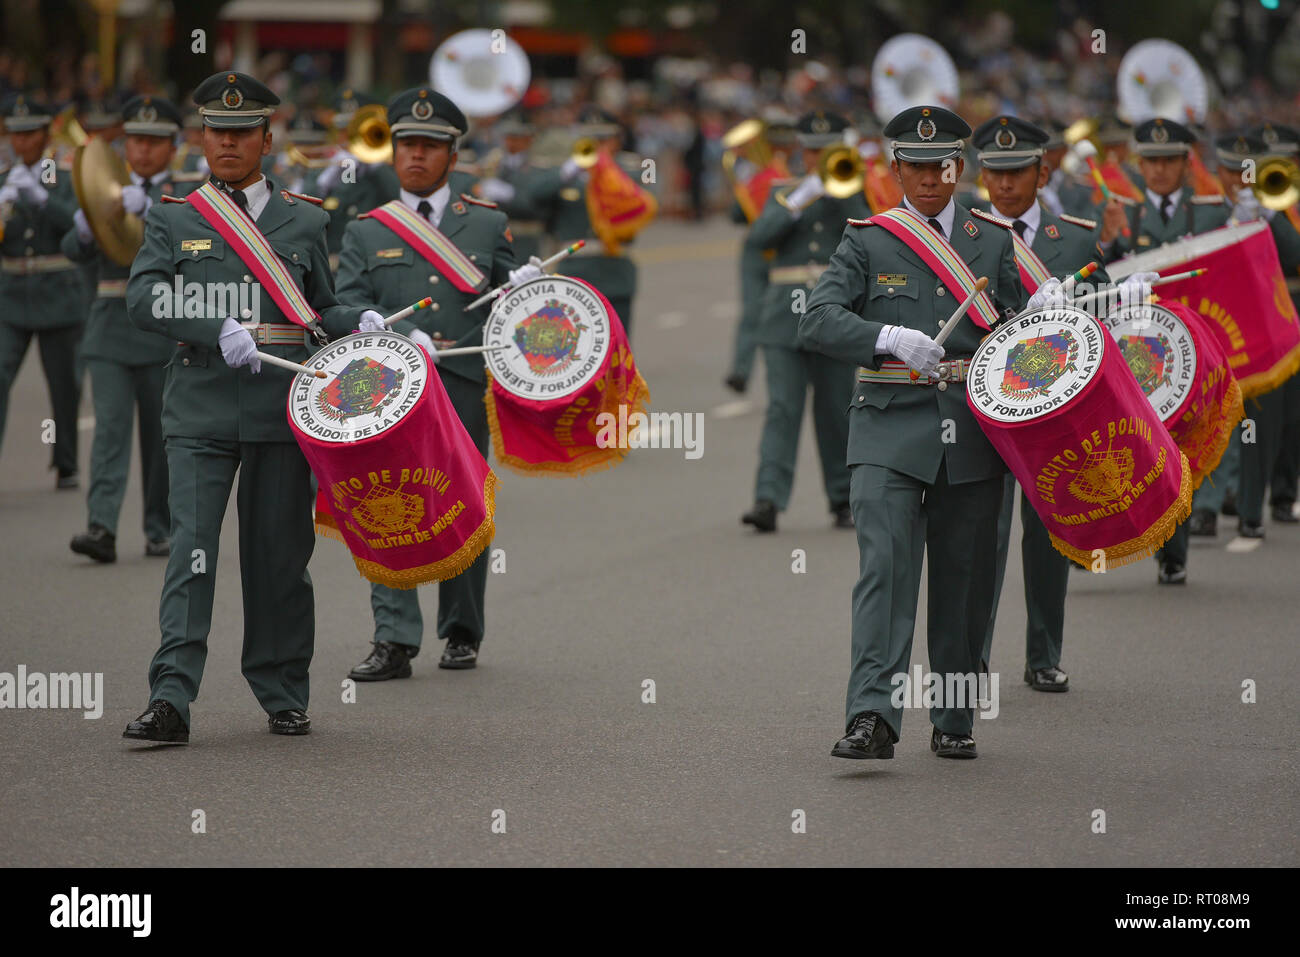 Buenos Aires, Argentina - 11 LUG 2016: Membri del boliviano banda militare esegue la parata durante le celebrazioni del bicentenario anniversa Foto Stock